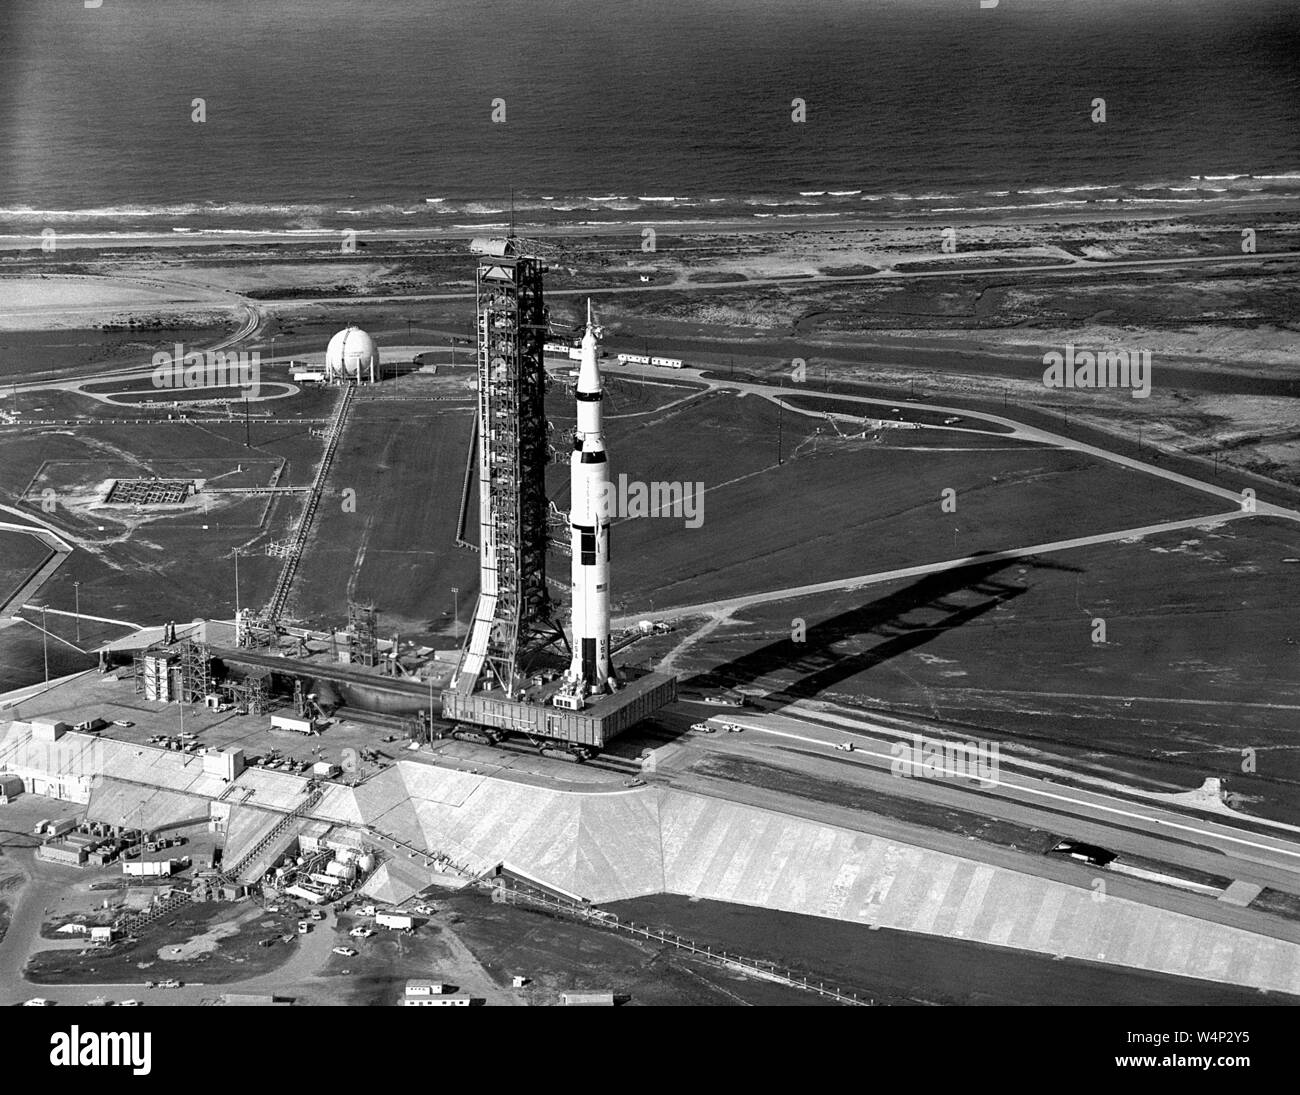 Vista aerea dell'Apollo 11 Saturn V sul trasportatore a complessi di lancio 39A, John F Kennedy Space Center su Merritt Island, Florida, 20 maggio 1969. Immagine cortesia Nazionale Aeronautica e Spaziale Administration (NASA). () Foto Stock